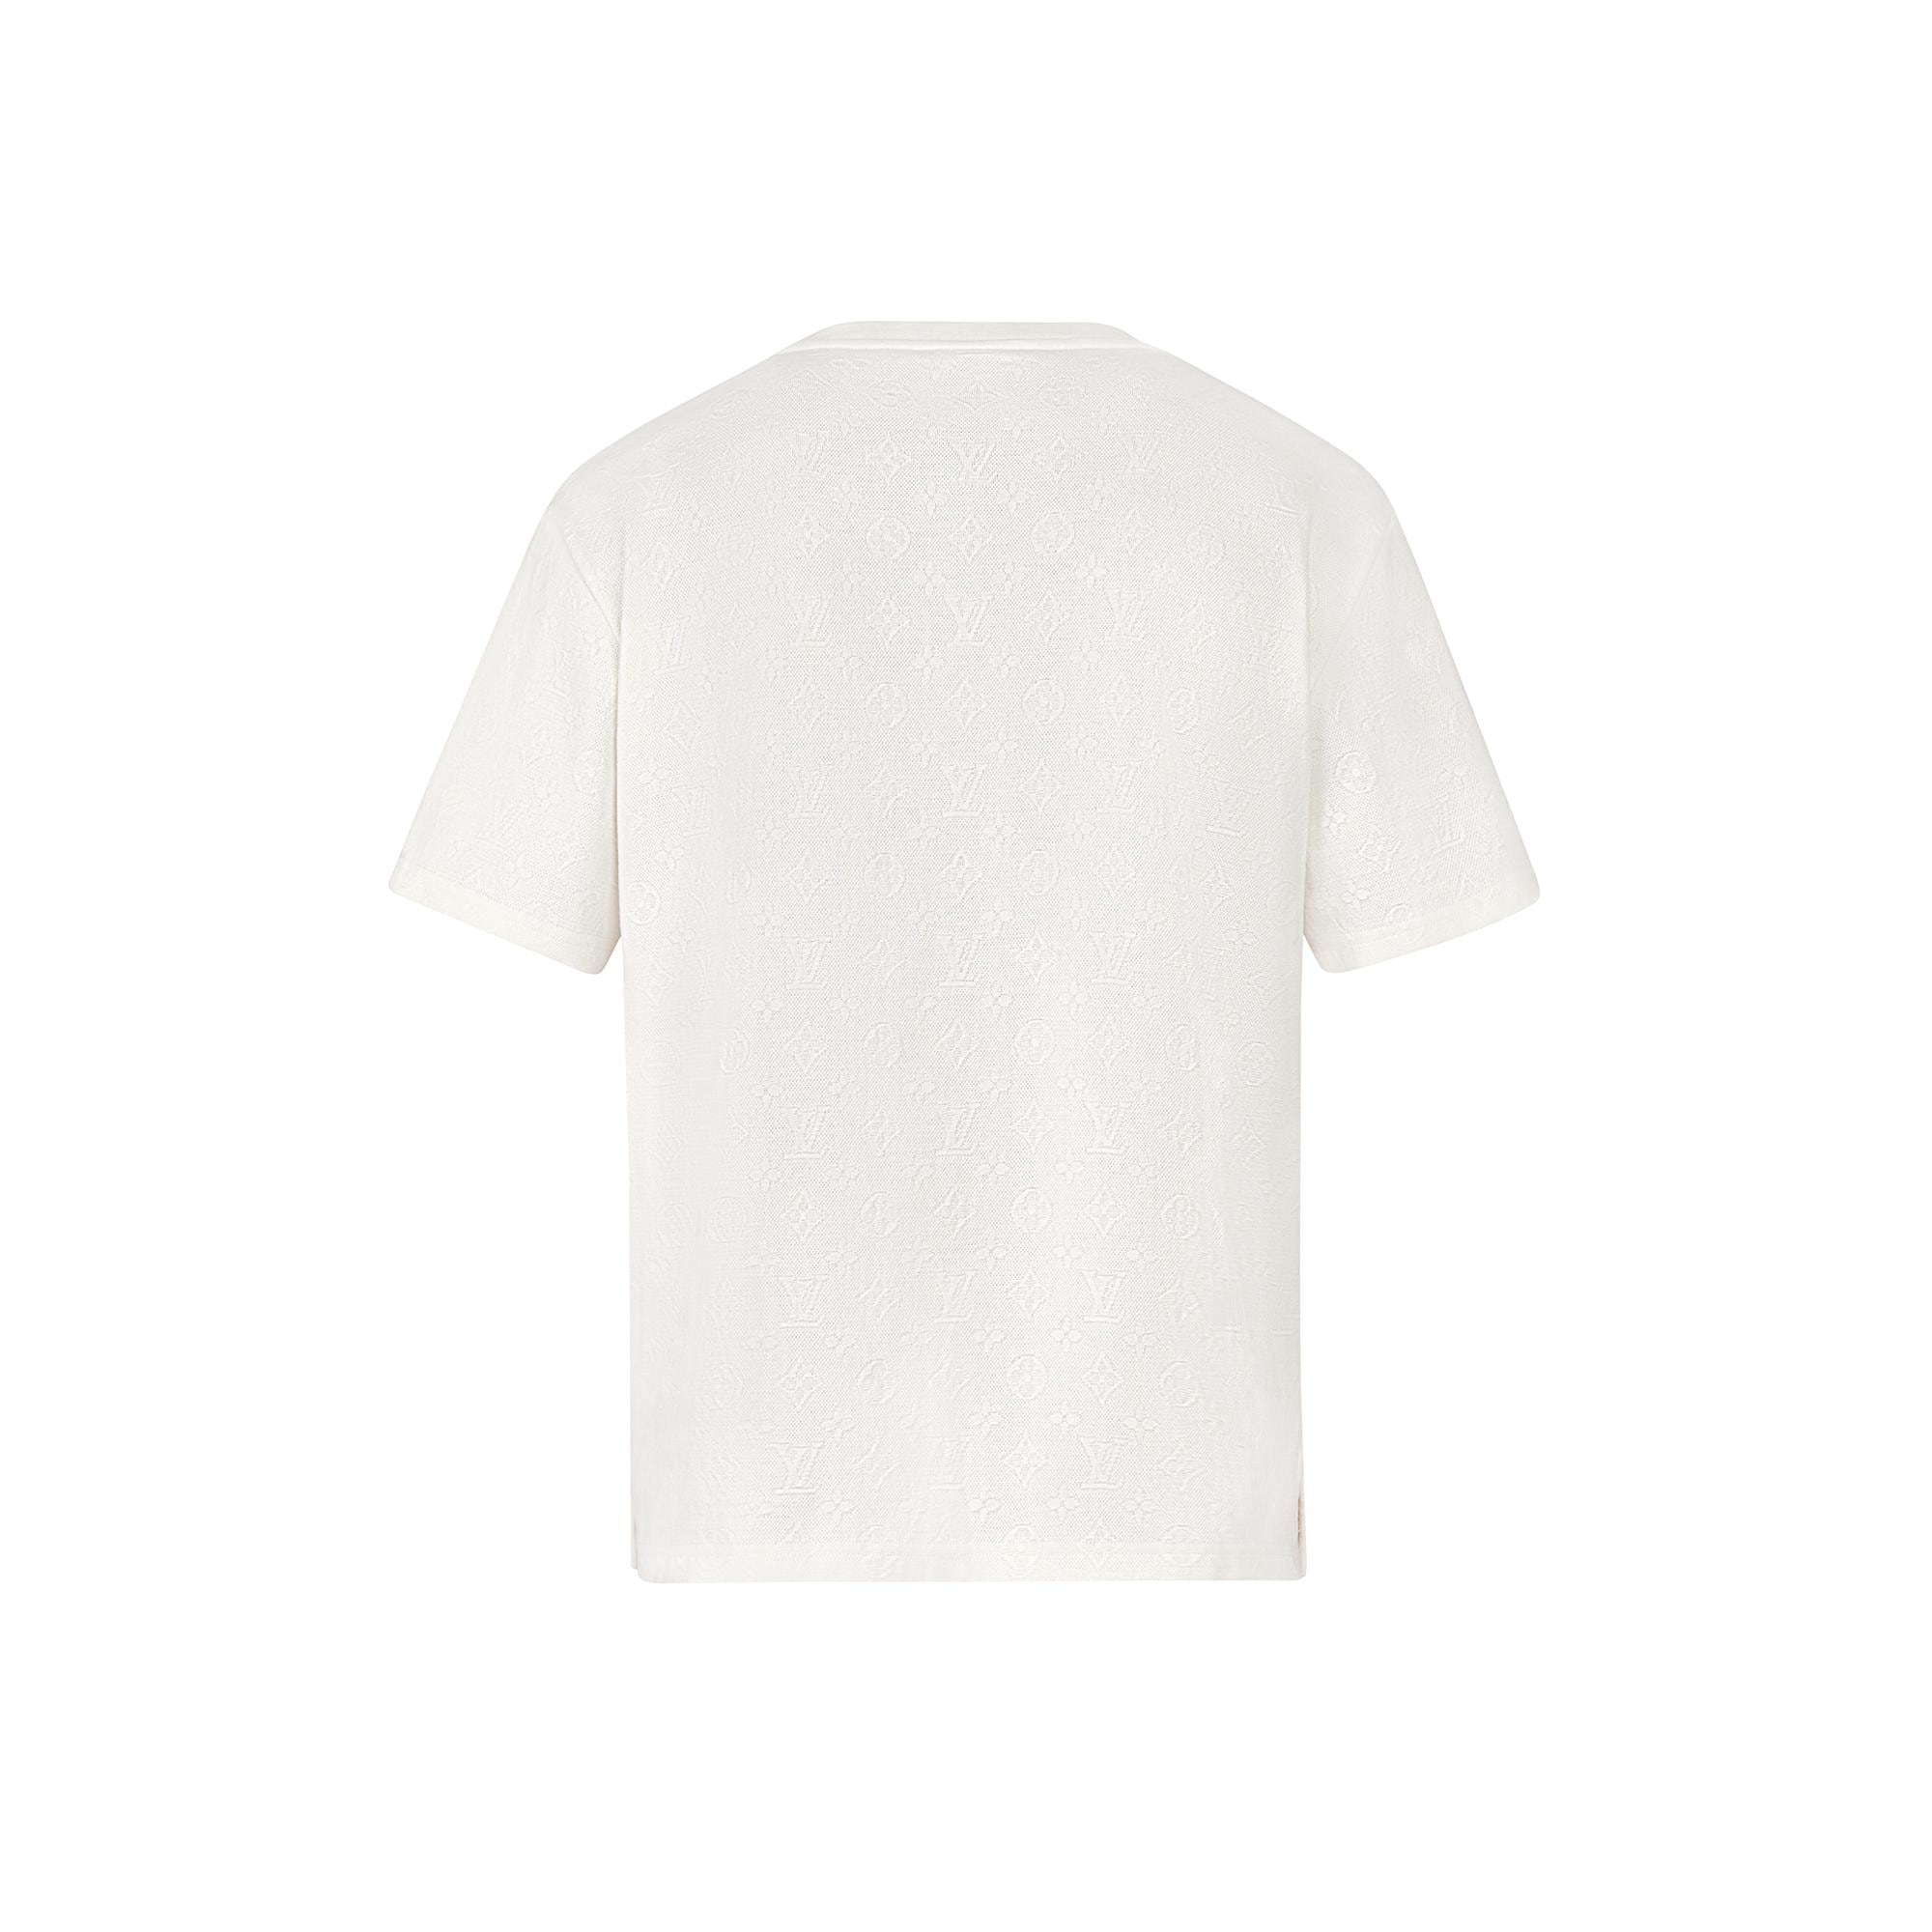 Louis Vuitton, Shirts, Louis Vuitton Signature 3d Pocket Monogram Tshirt